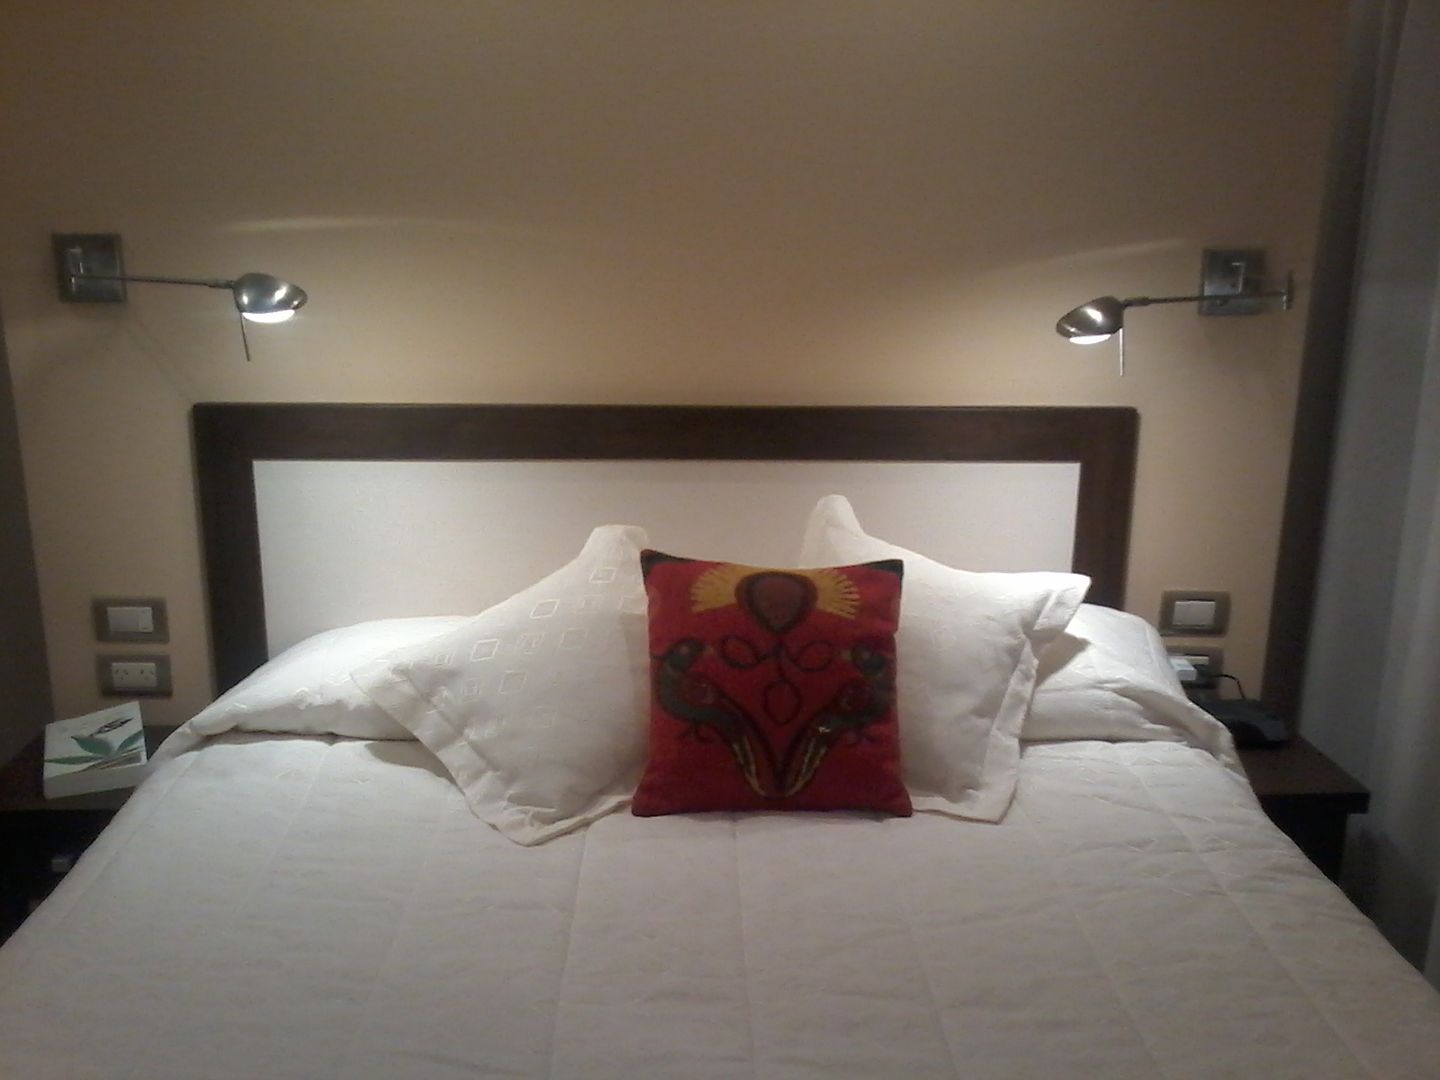 Detalle de cabecera de cama apoyada sobre tabique divisor y de los artefactos iluminación tipo apliques móviles. D&C Interiores Dormitorios de estilo moderno